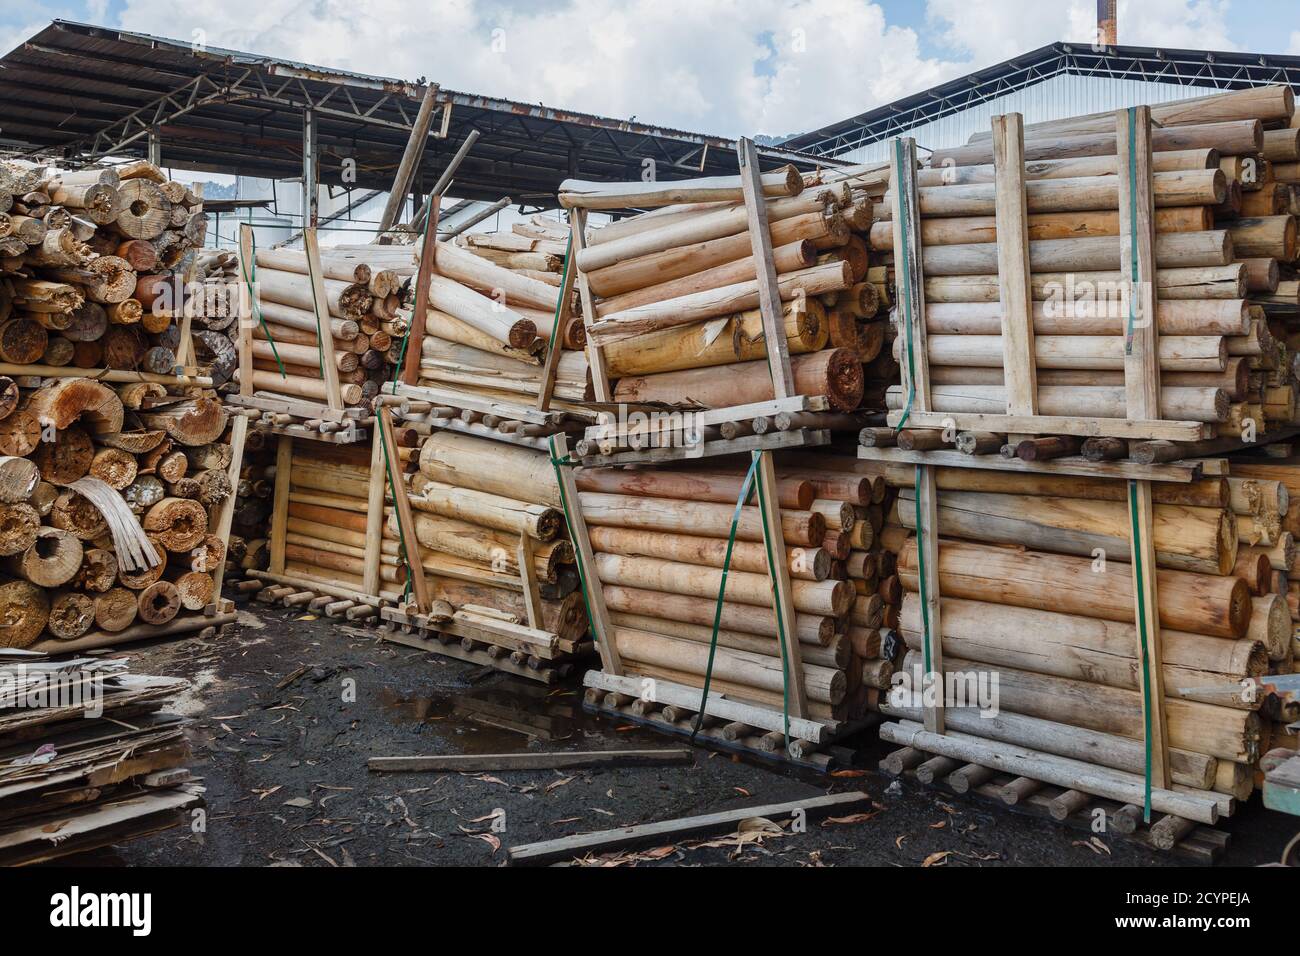 Schnittholz mit unbrauchbarem Kern für Furnierschälung in einer Spielholzfabrik in Sandakan, Sabah, Malaysia. Stattdessen werden die Protokolle verkauft oder verbrannt. Stockfoto